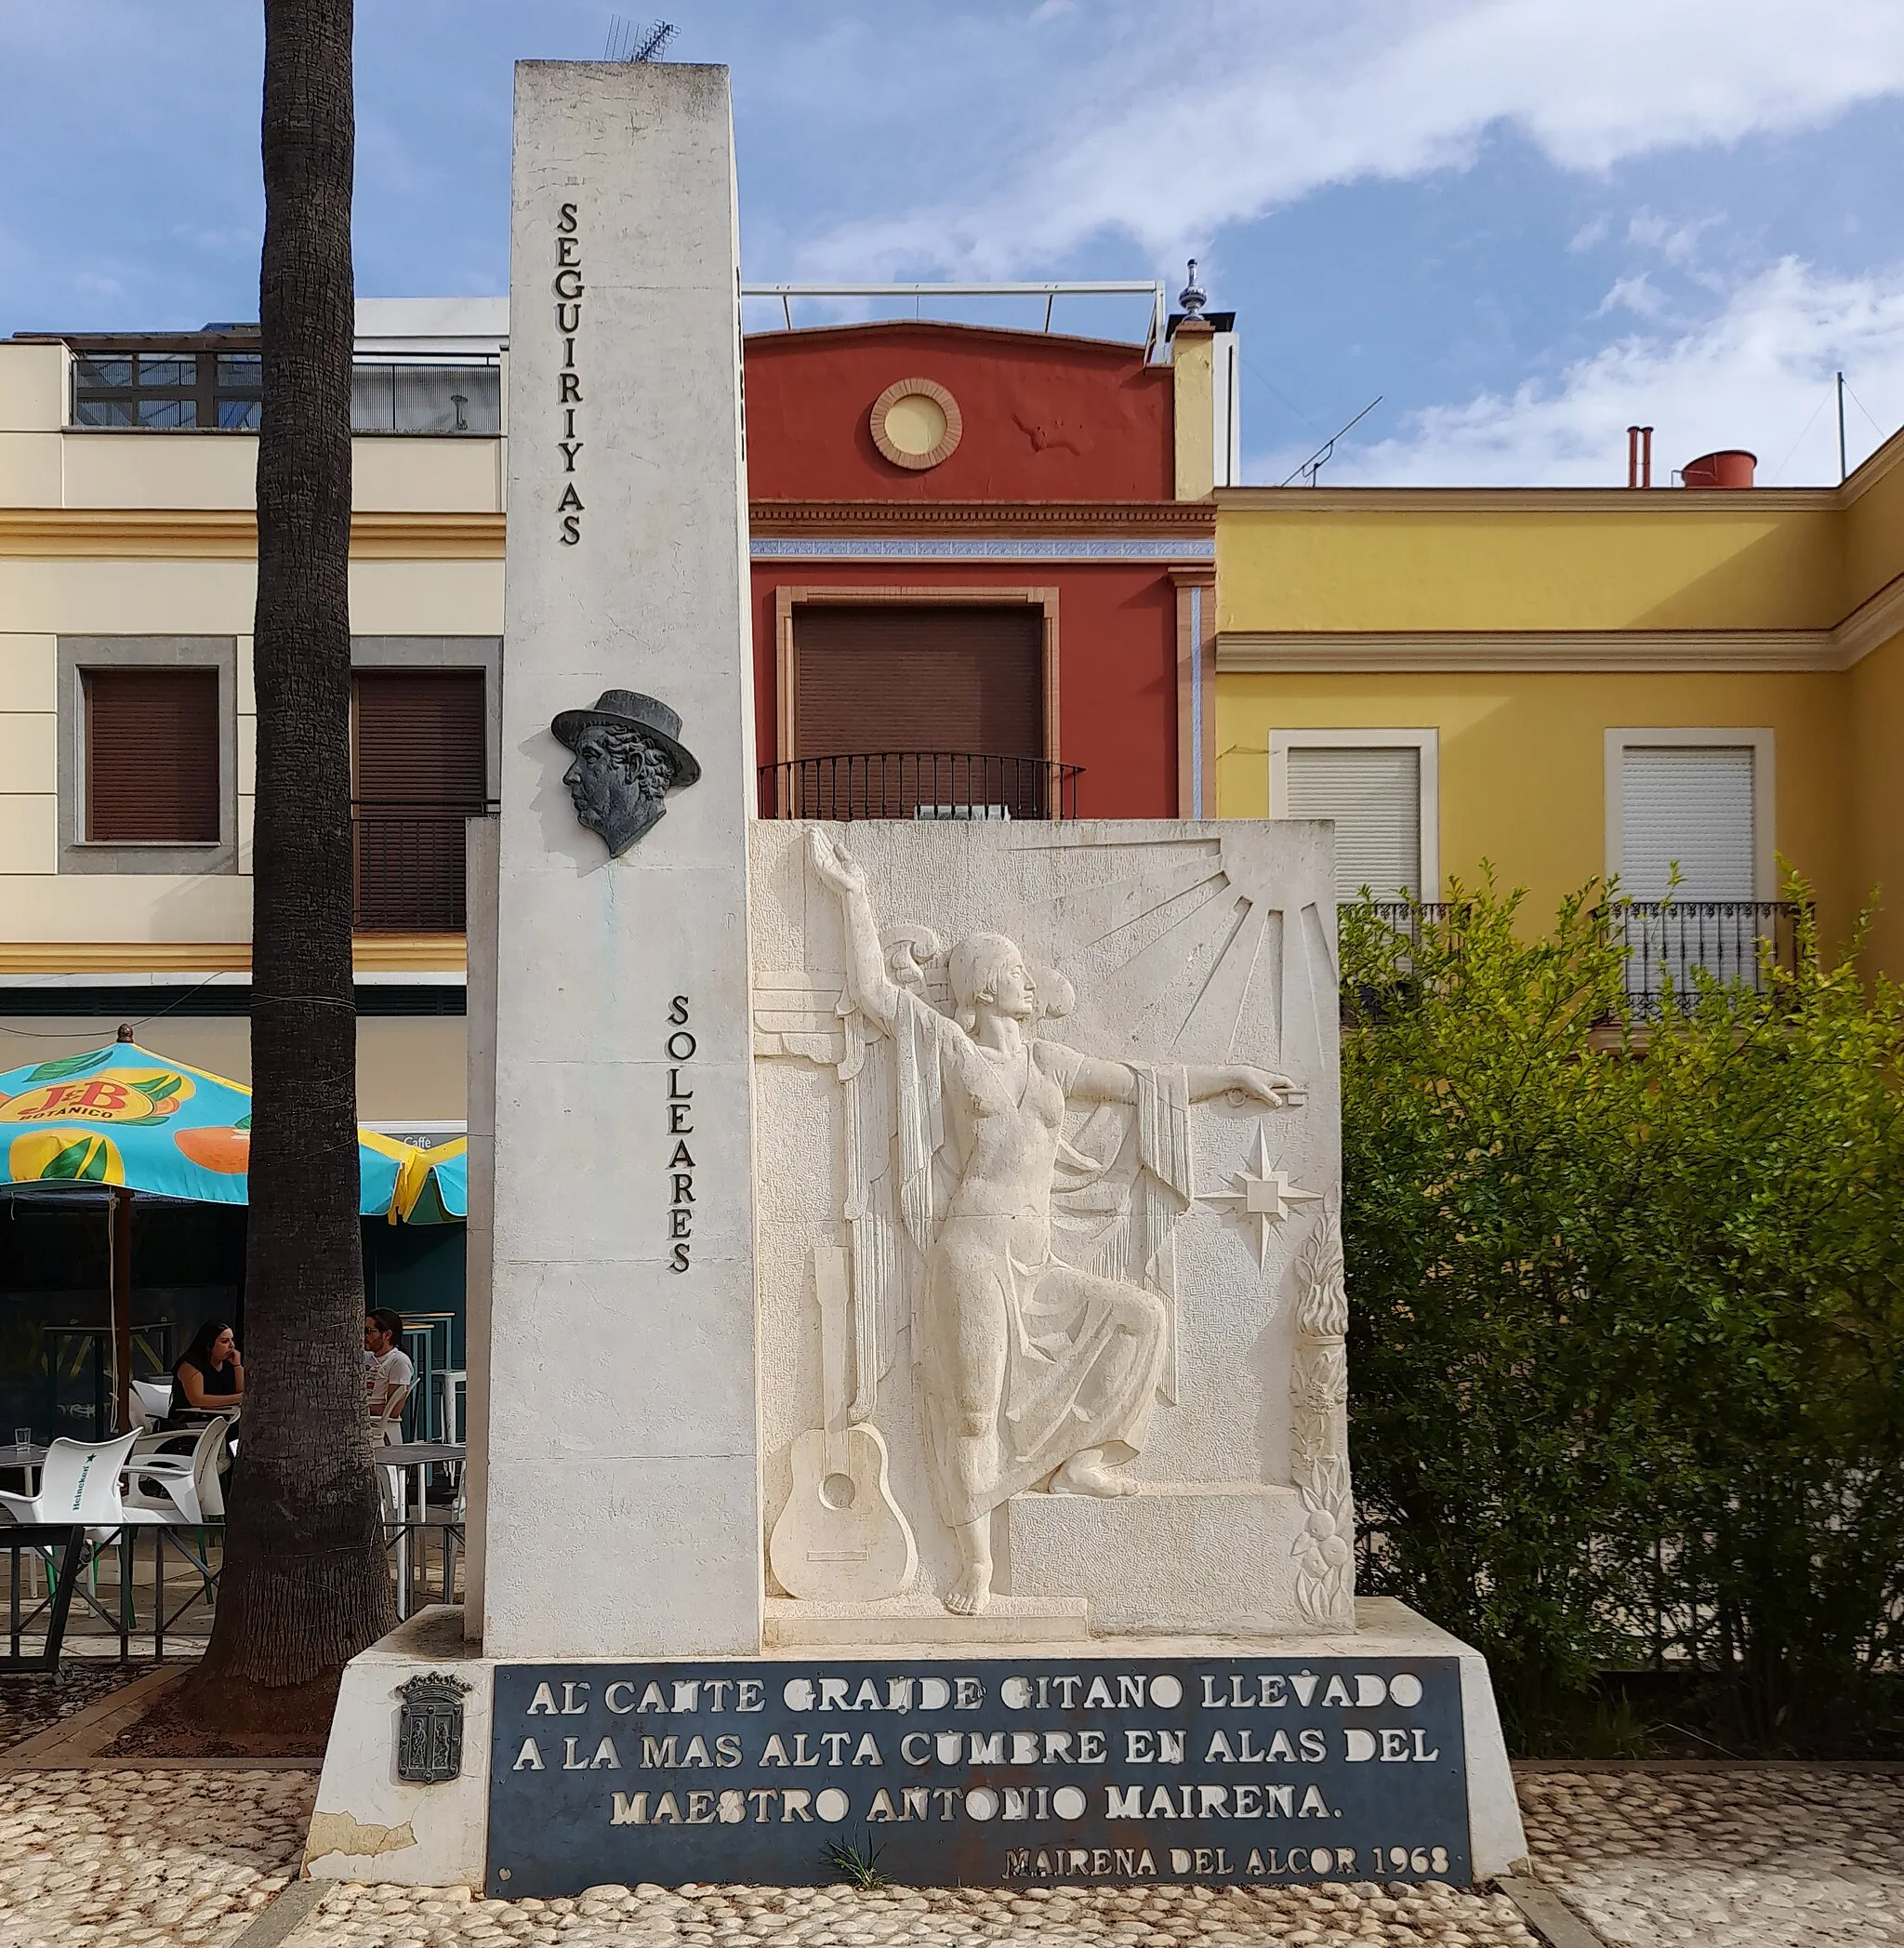 Photo showing: "Monumento al cante gitano llevado a la más alta cumbre en alas del maestro Antonio Mairena. Mairena del Alcor. 1968"